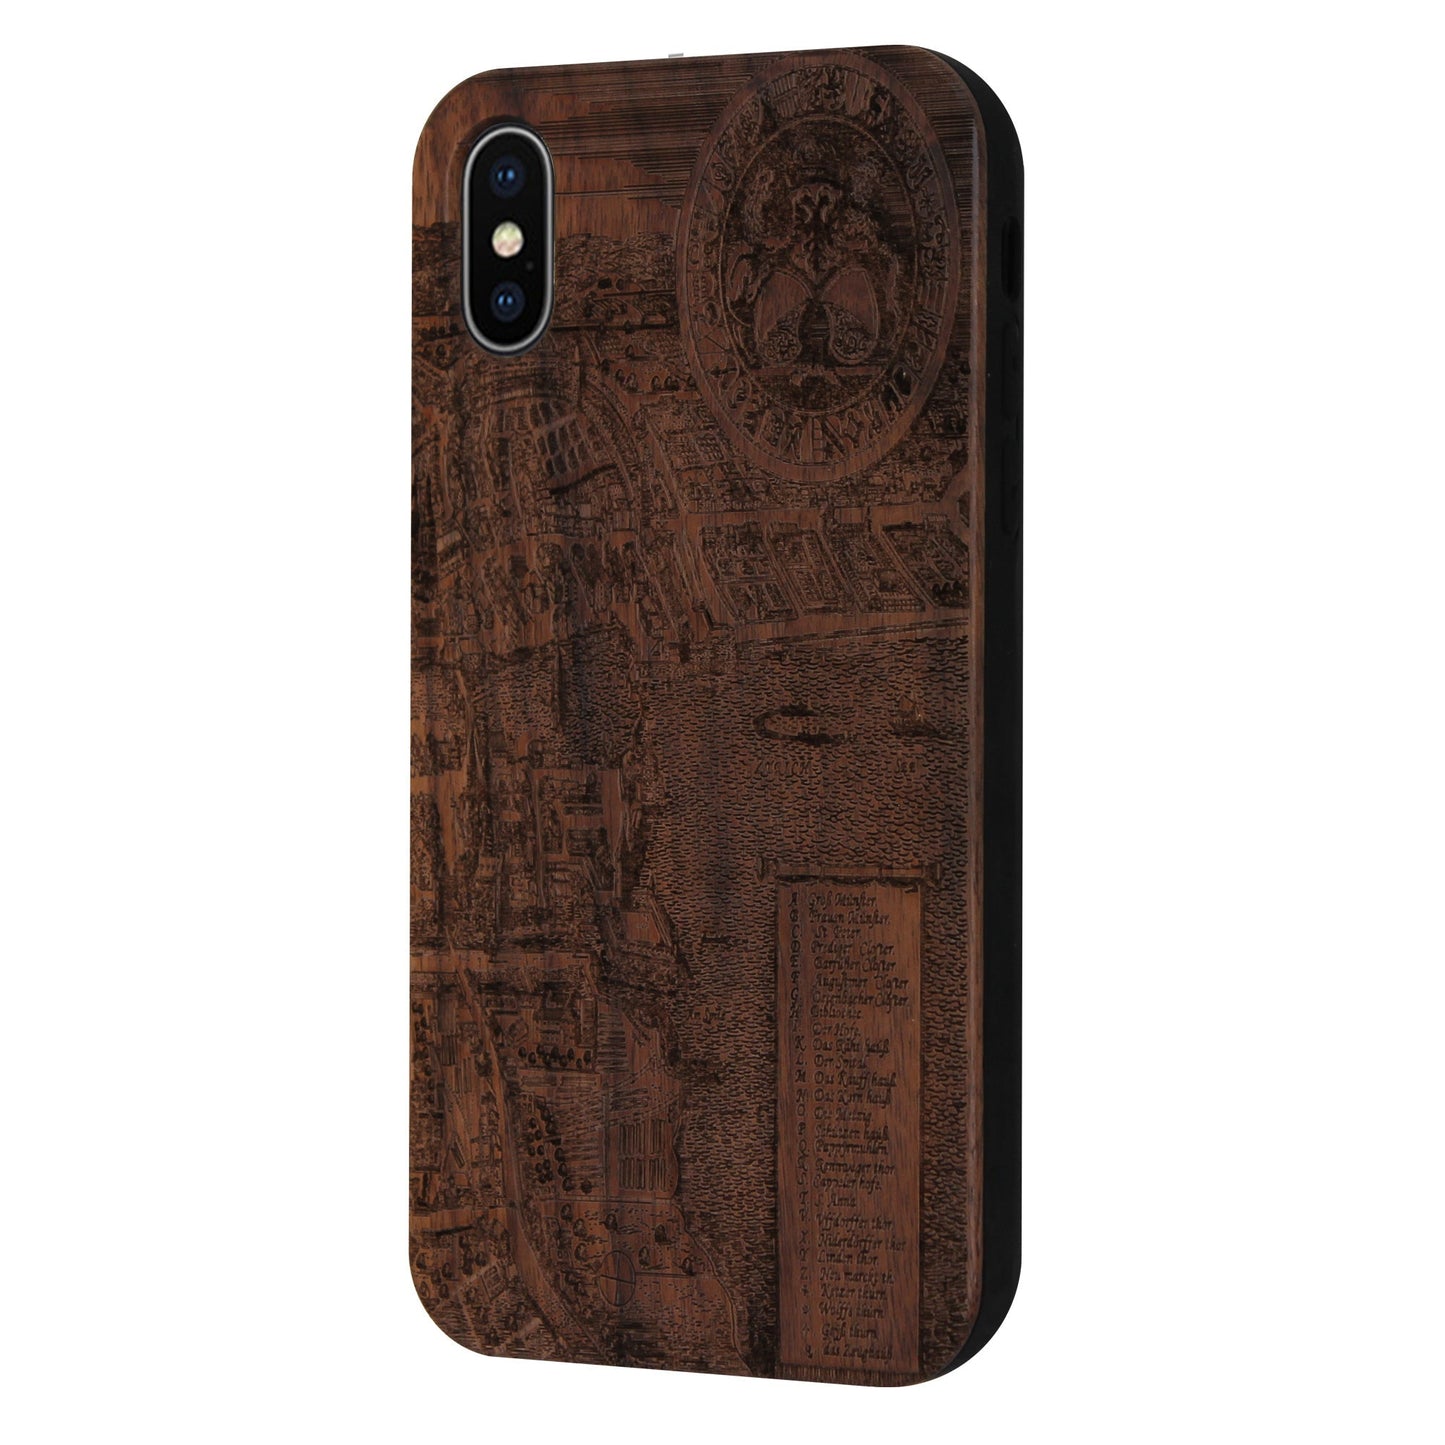 Zurich Merian Eden case made of walnut wood for iPhone X/XS